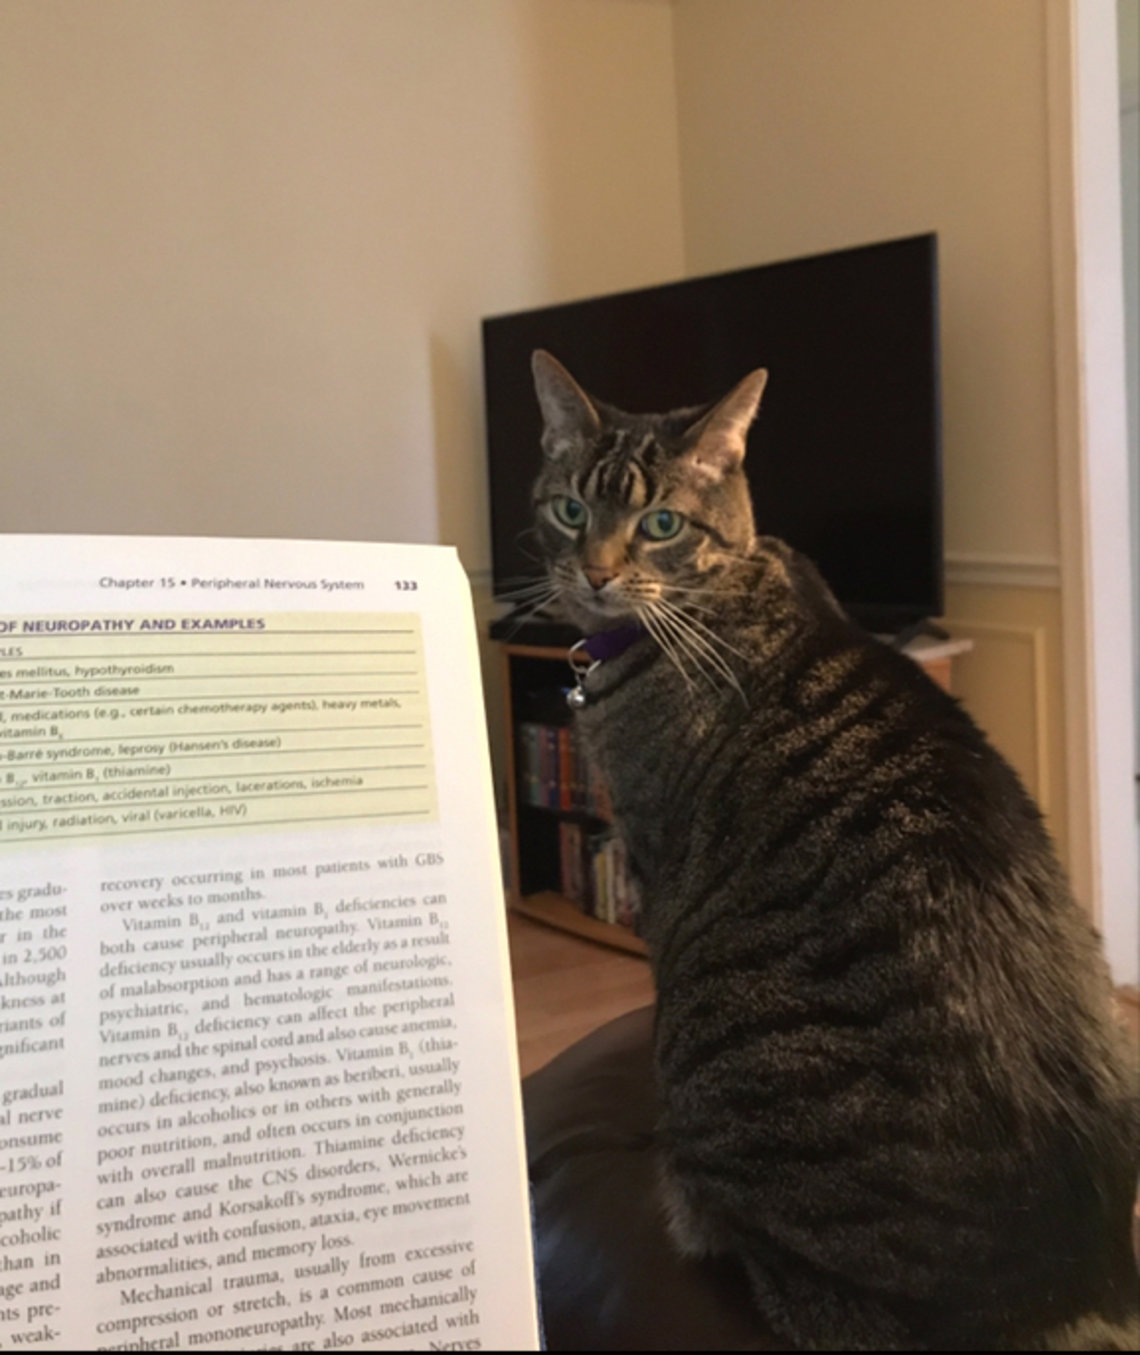 Cat shown beside manuscript page